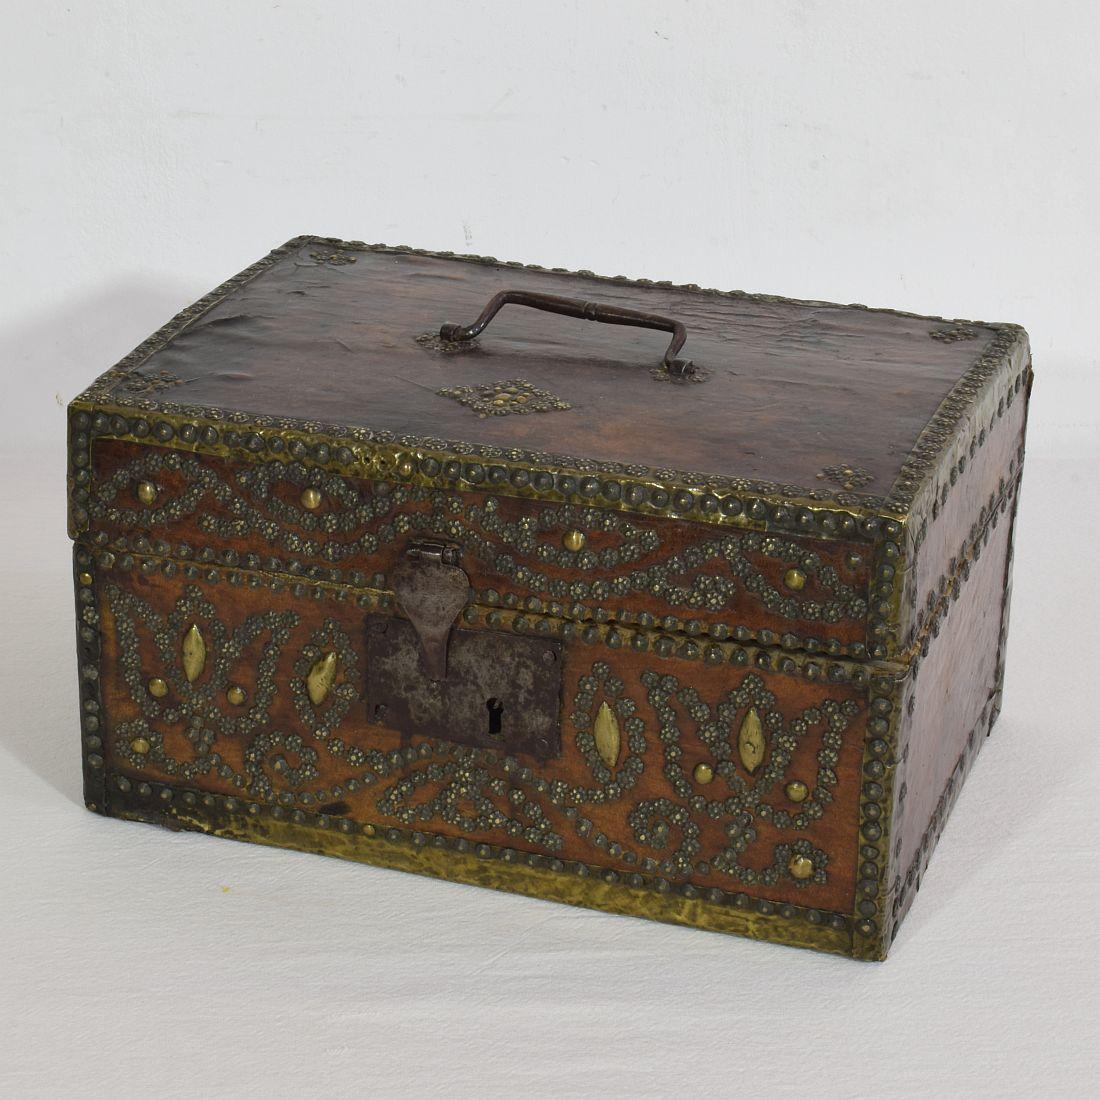 Boîte très ancienne recouverte de cuir et décorée de fer et de laiton. 
Une trouvaille rare.
France, vers 1600-1700
Usé et quelques pertes.